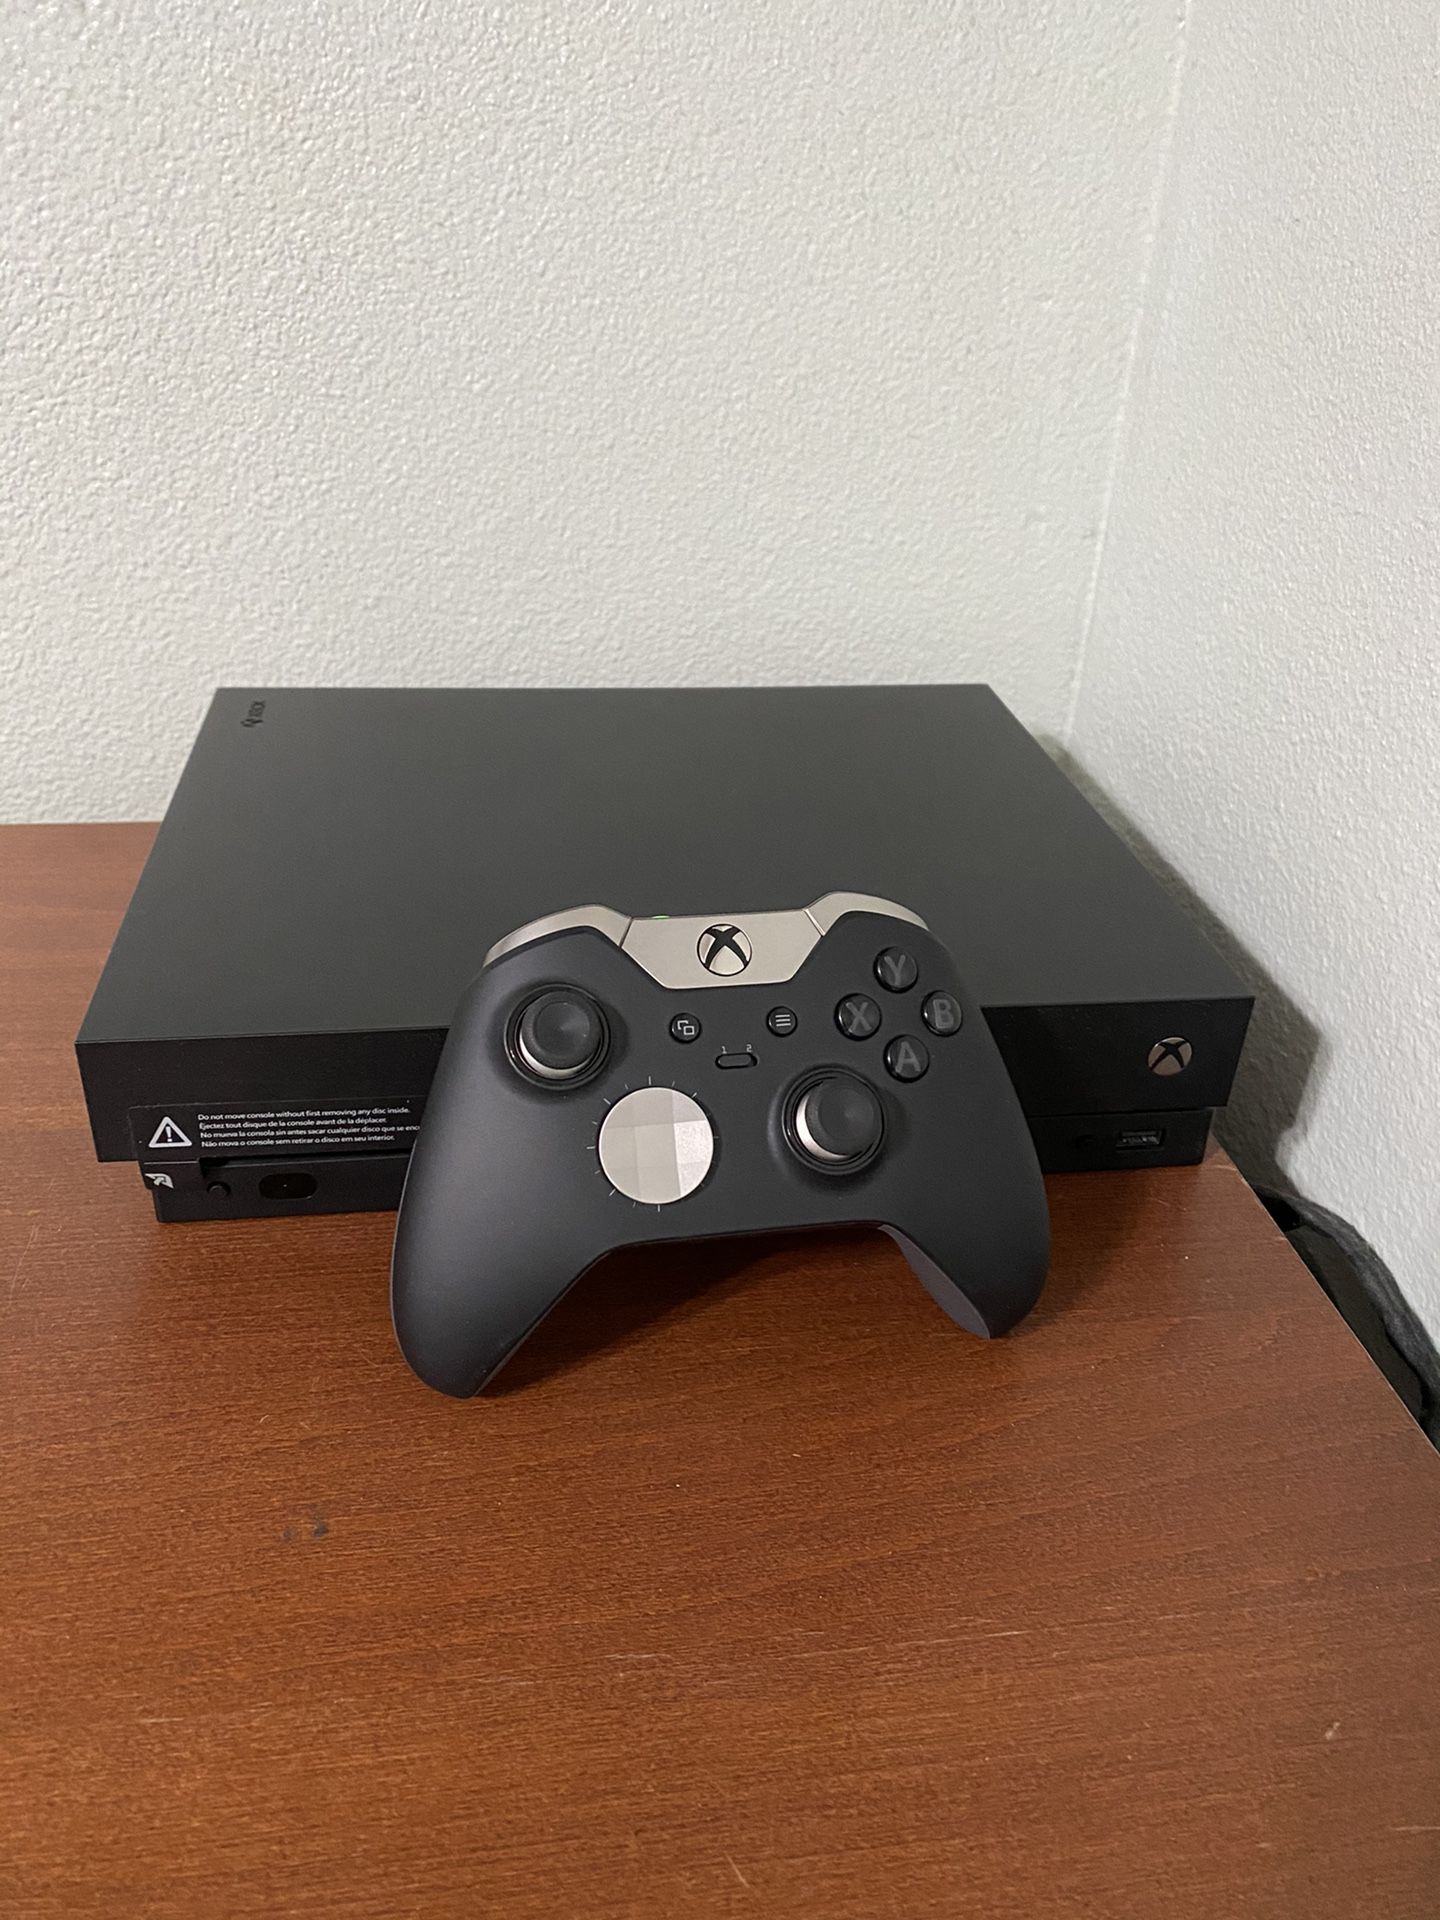 Xbox One X 1 TB